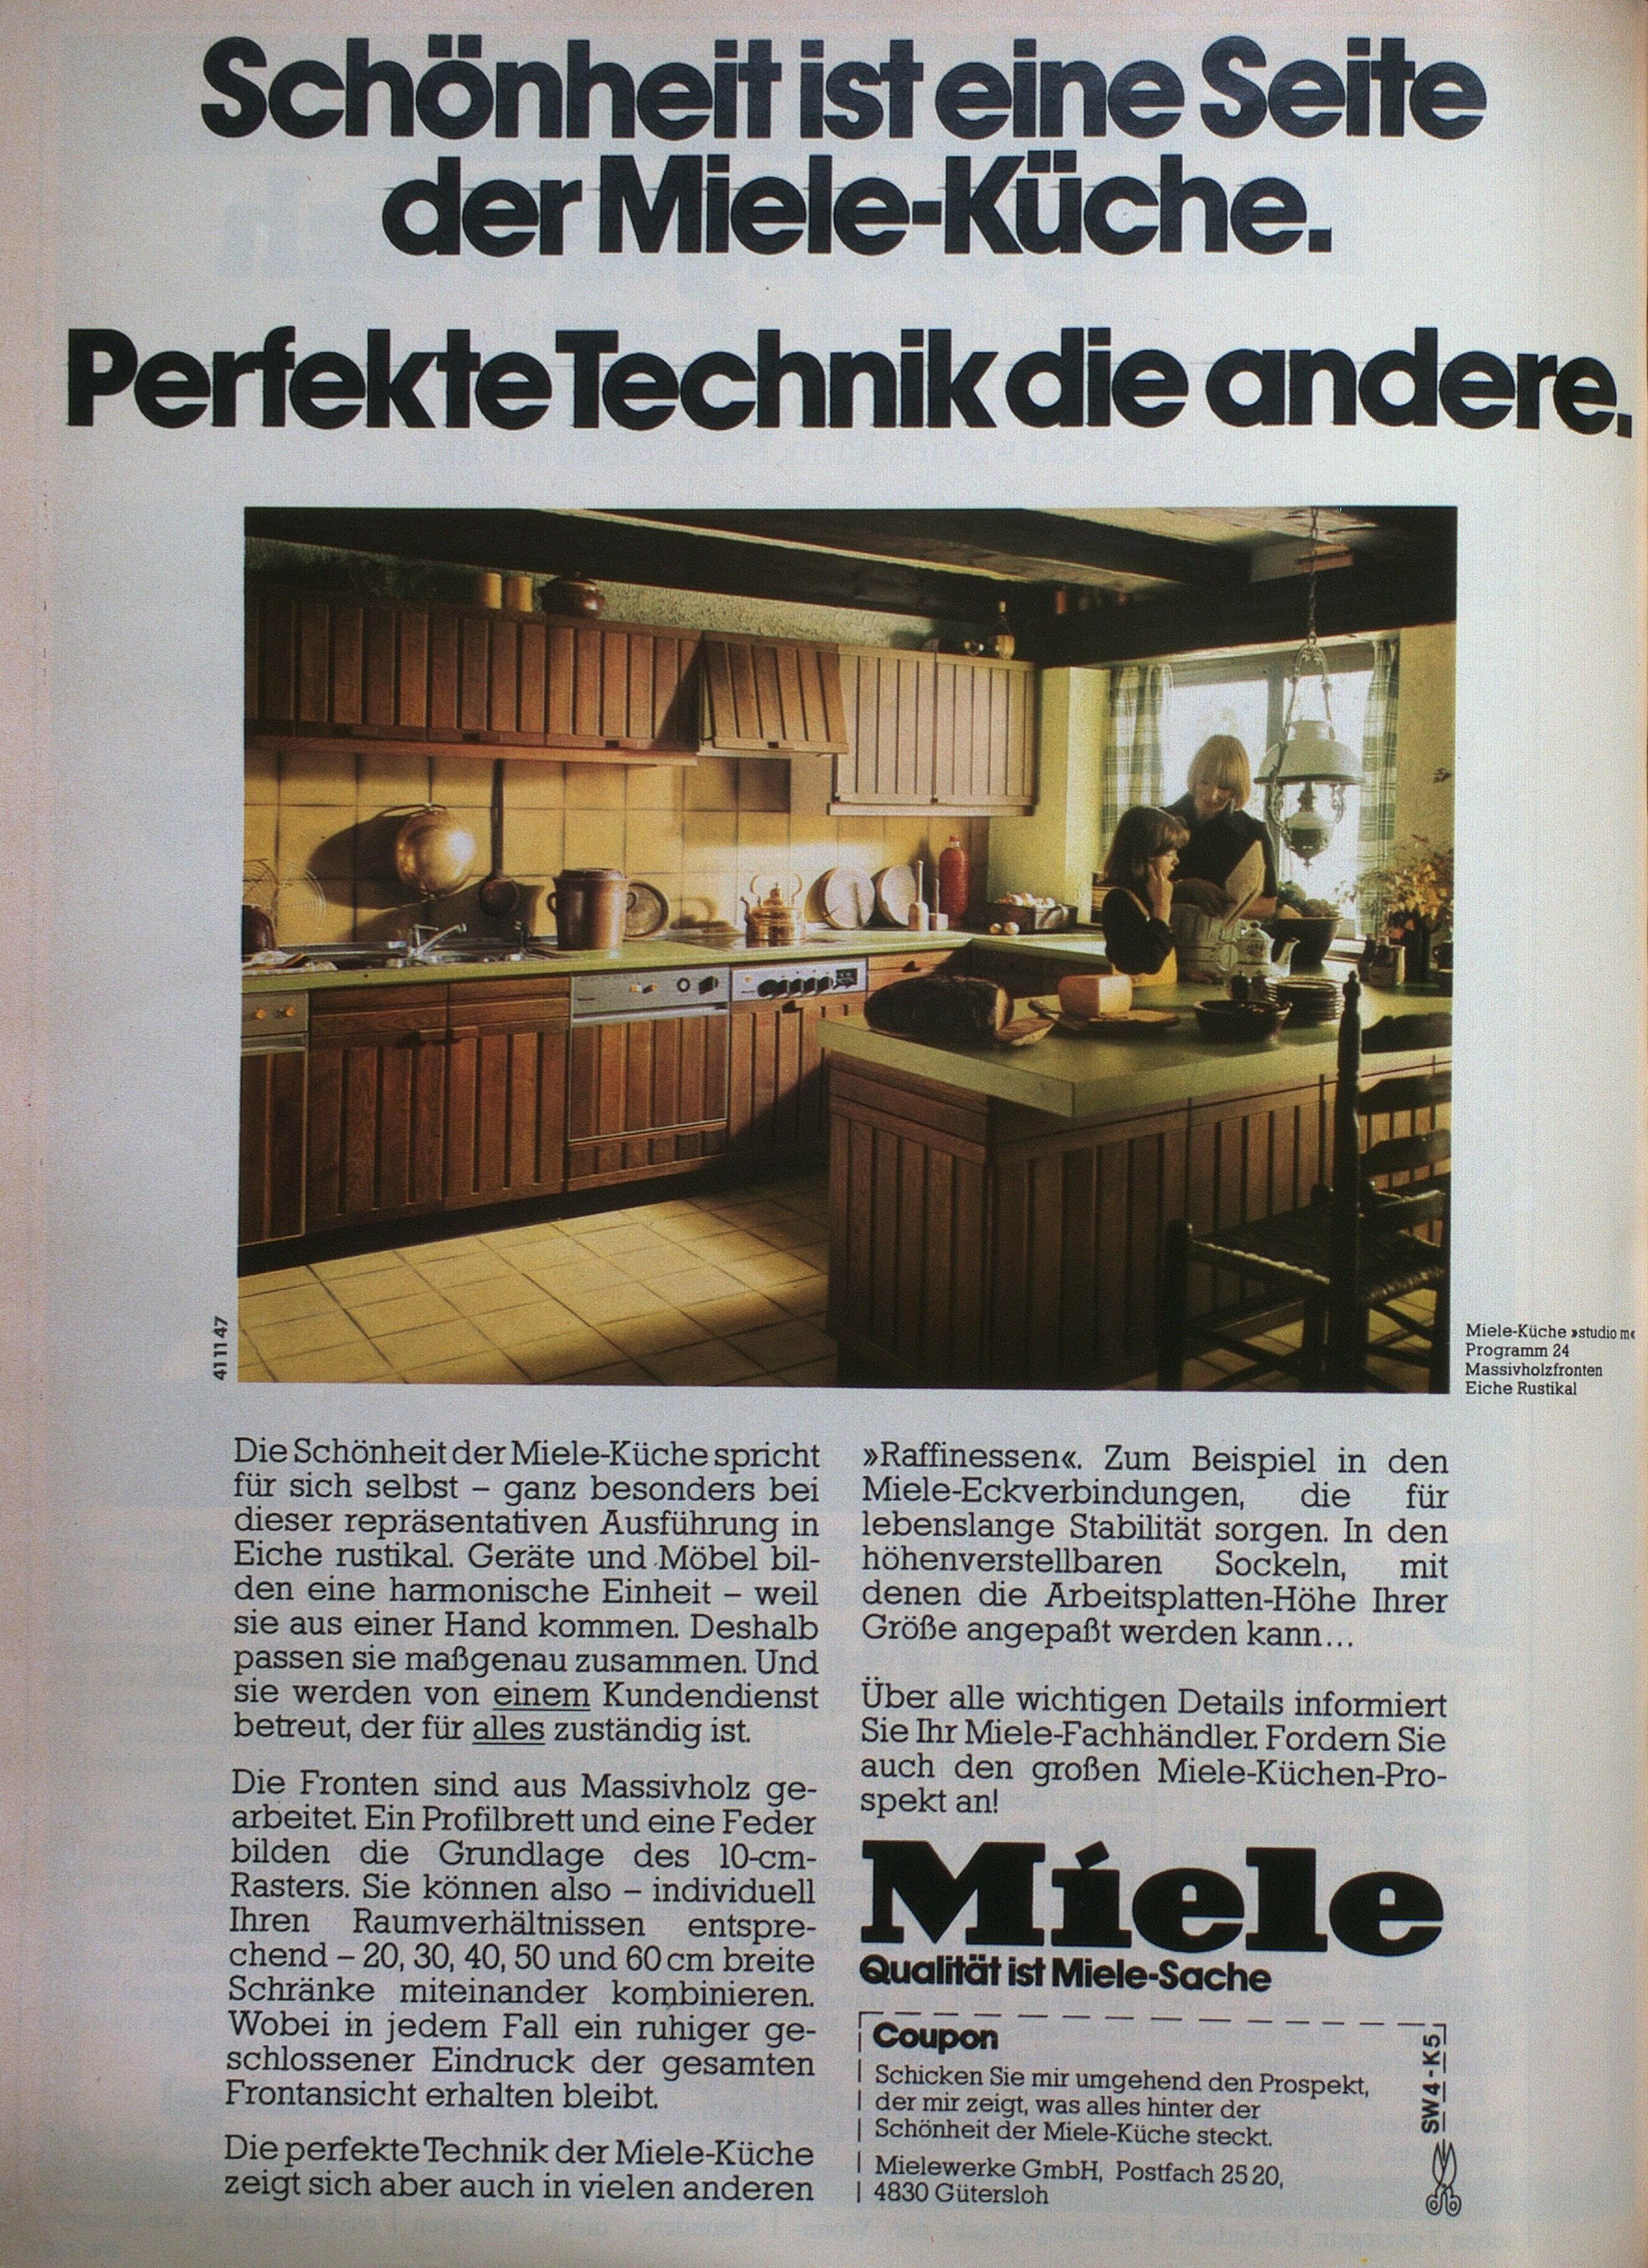 Zu sehen ist eine Werbeanzeige der Firma Miele in der Zeitschrift Schöner Wohnen von April 1977.